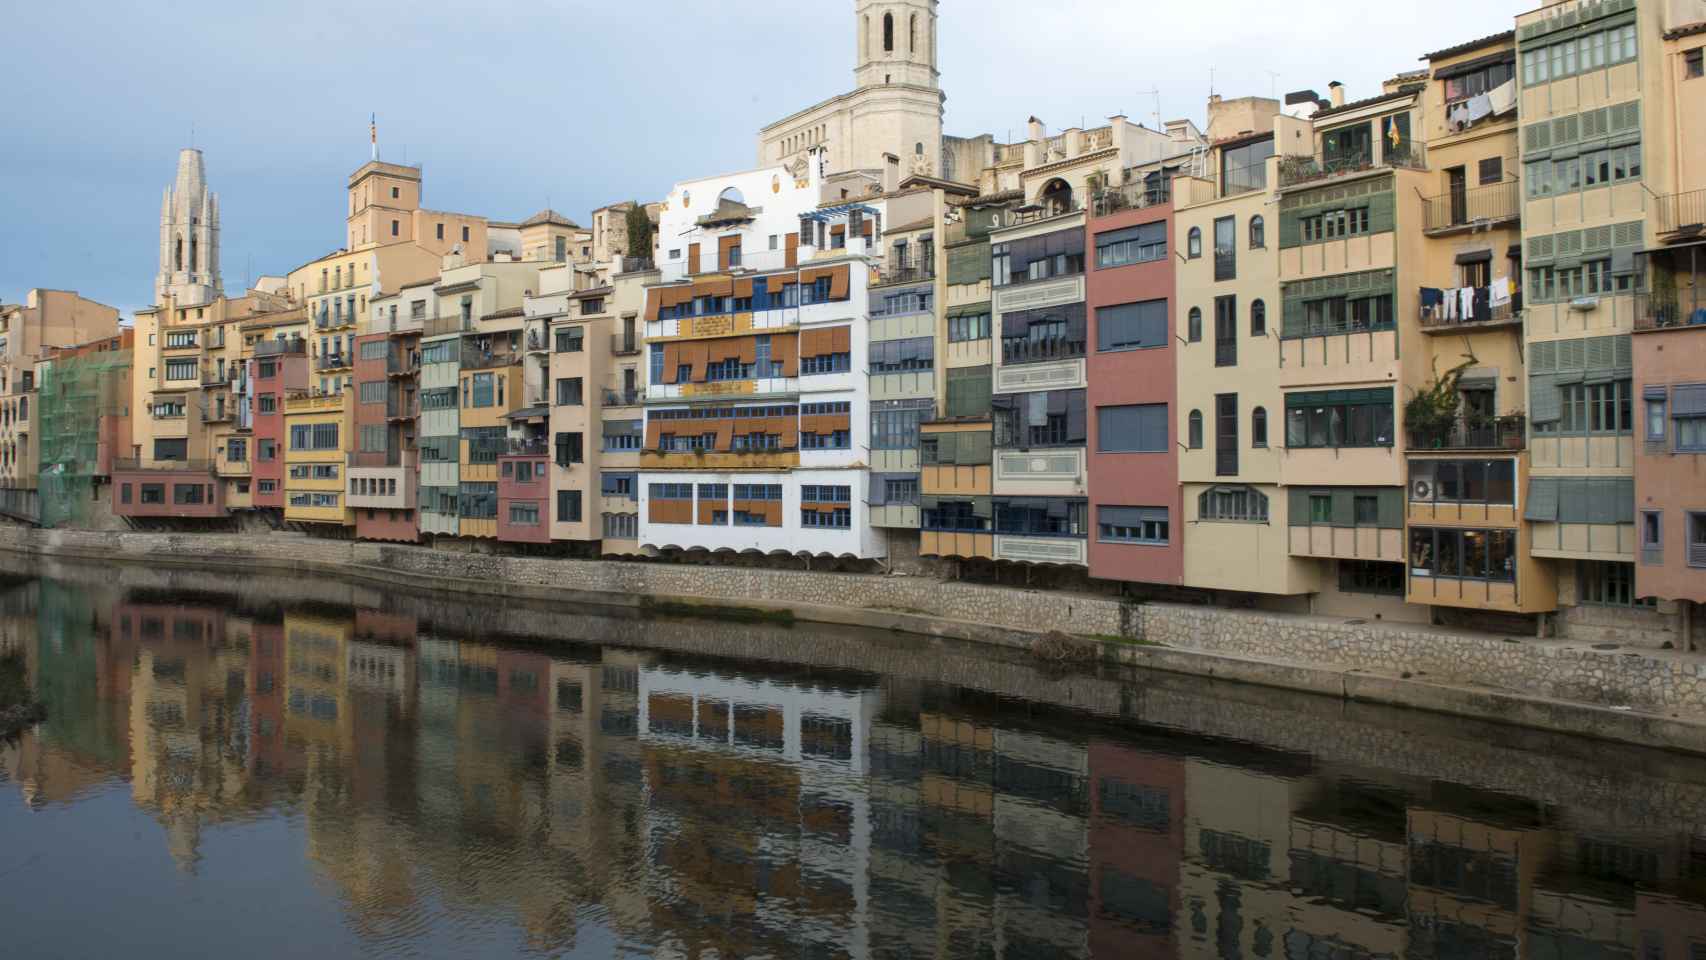 Vista del río Onyar con la Catedral y la Iglesia de Sant Feliu, a 30 de diciembre de 2021, en Girona (España).